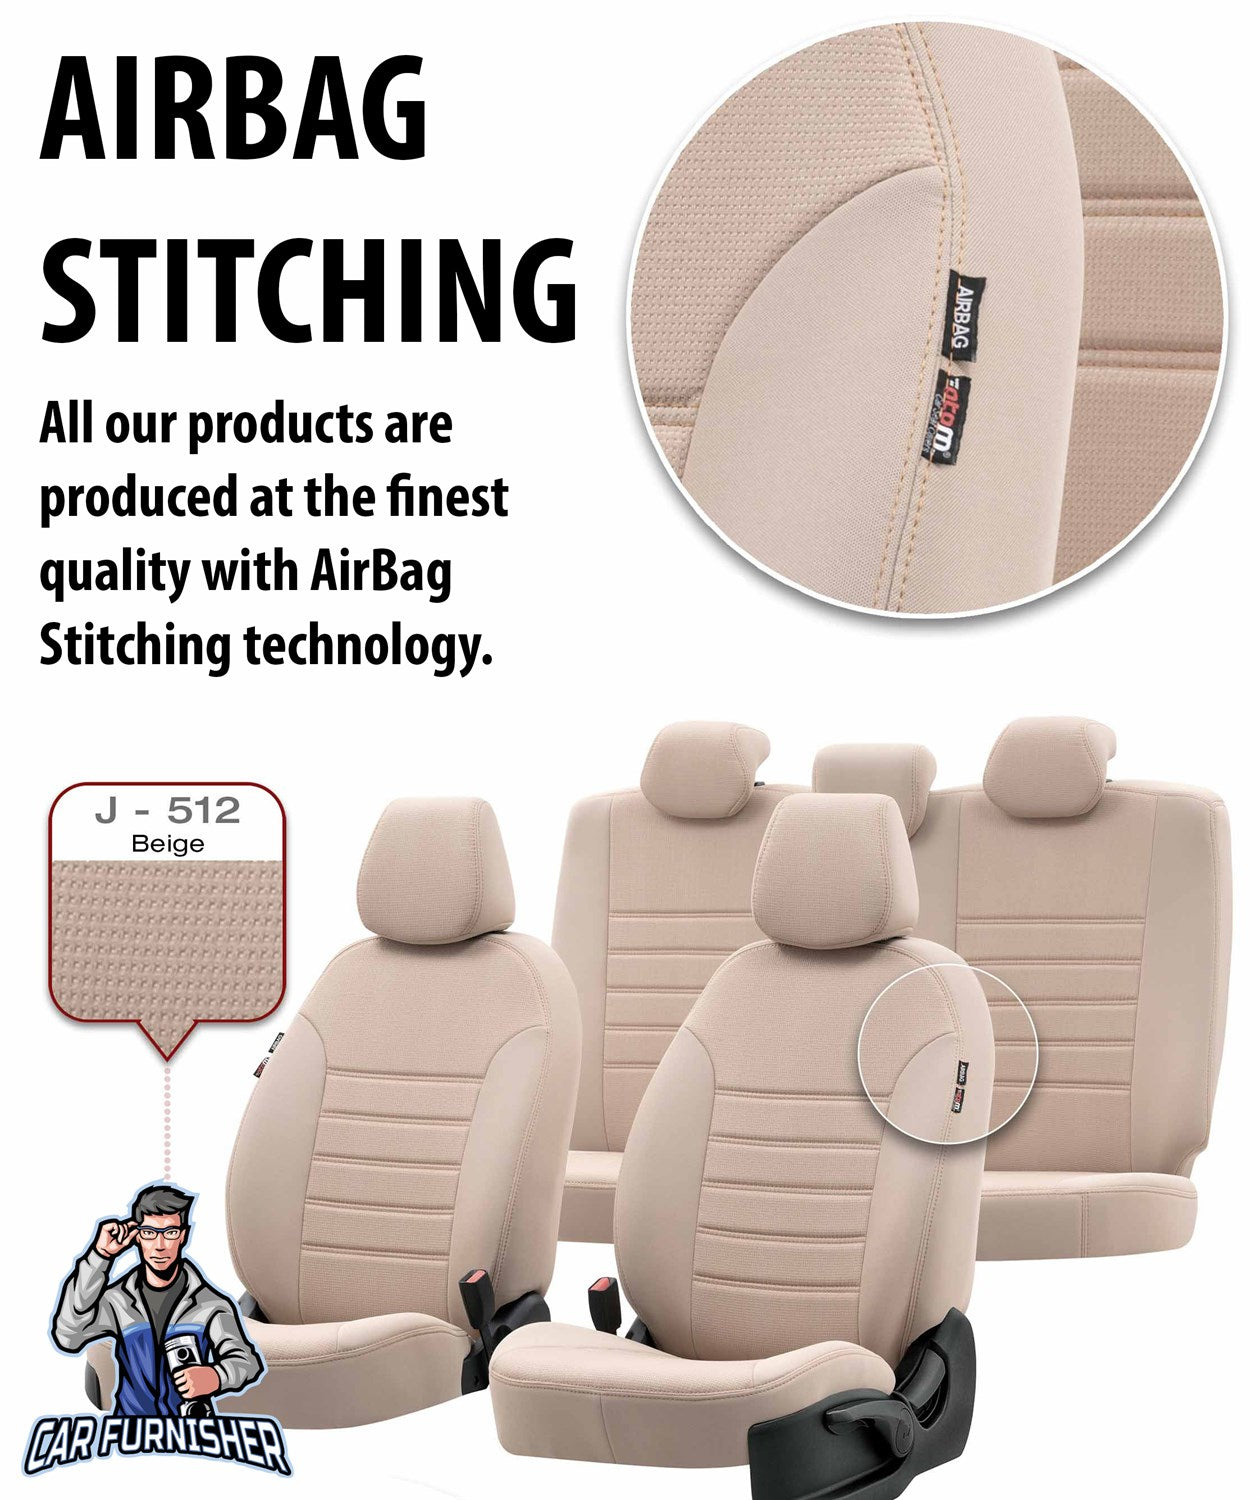 Bmw 5 Series Car Seat Cover 1996-2023 E39/E60/F10/G30 Original Smoked Black Full Set (5 Seats + Handrest) Fabric